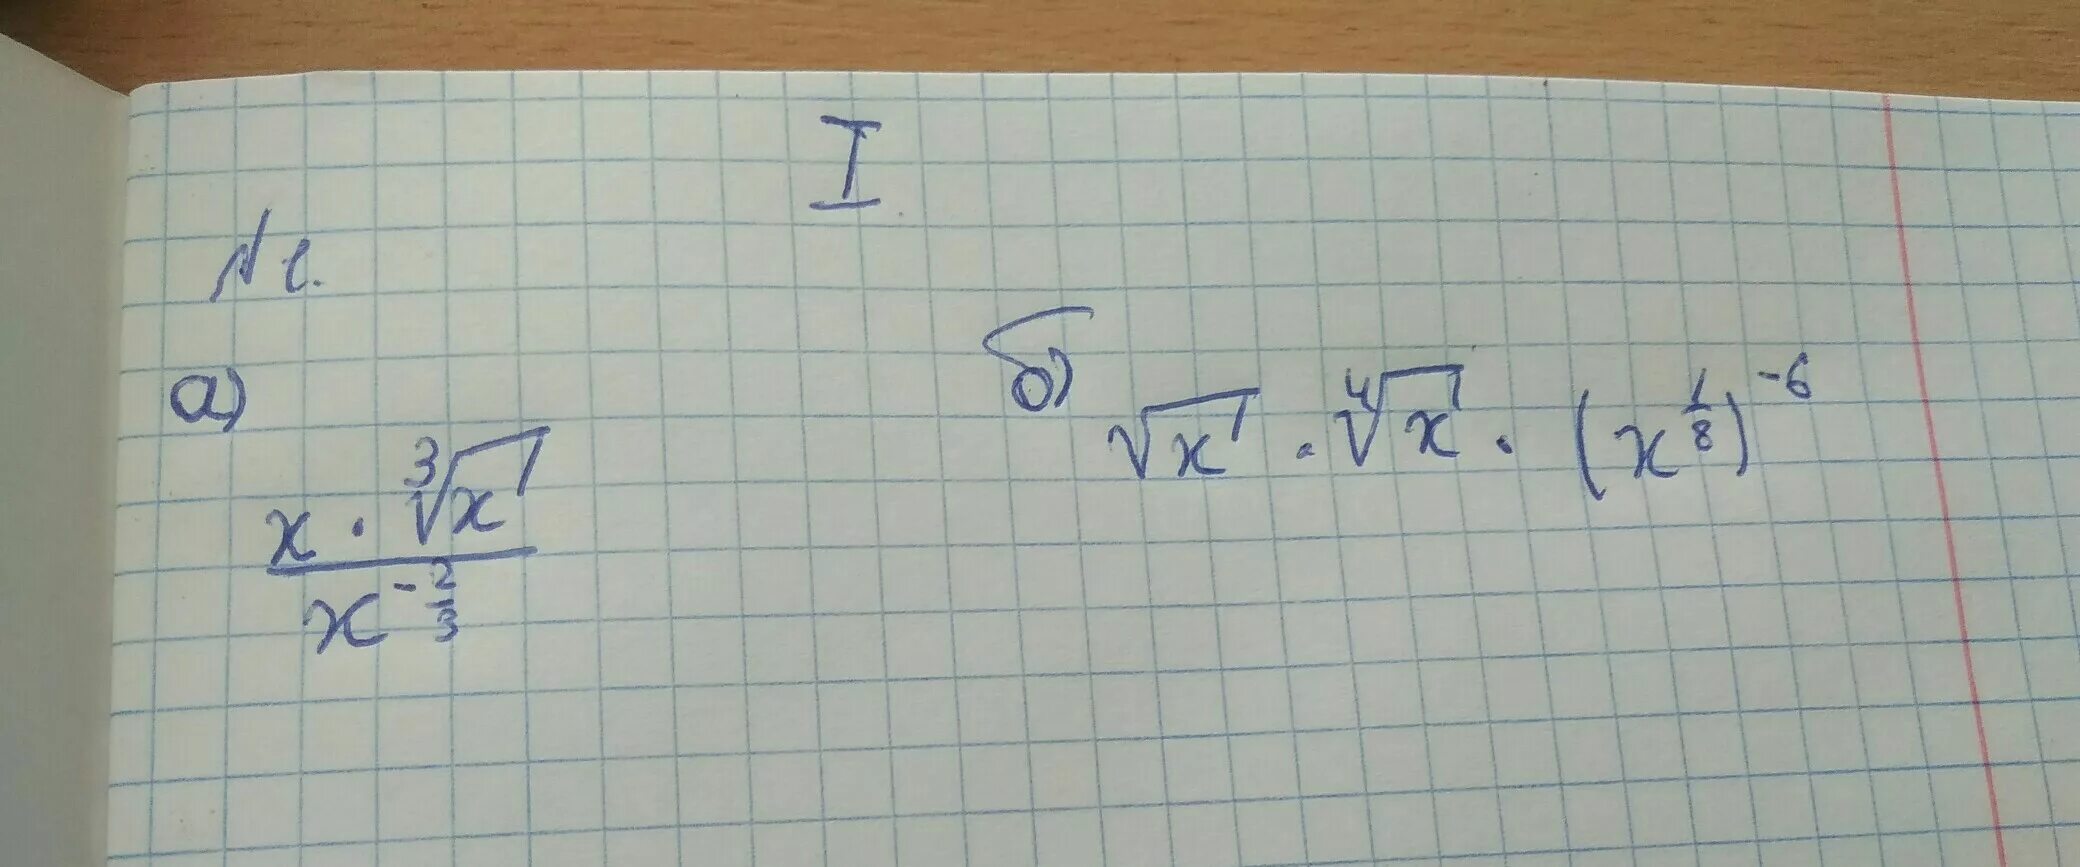 3x 10 корень x 3. Представьте в виде степени с основанием x. Представь в виде степени с основанием x. Представьте в виде степени с основанием x x>0. Представьте в виде степени с основанием 10.